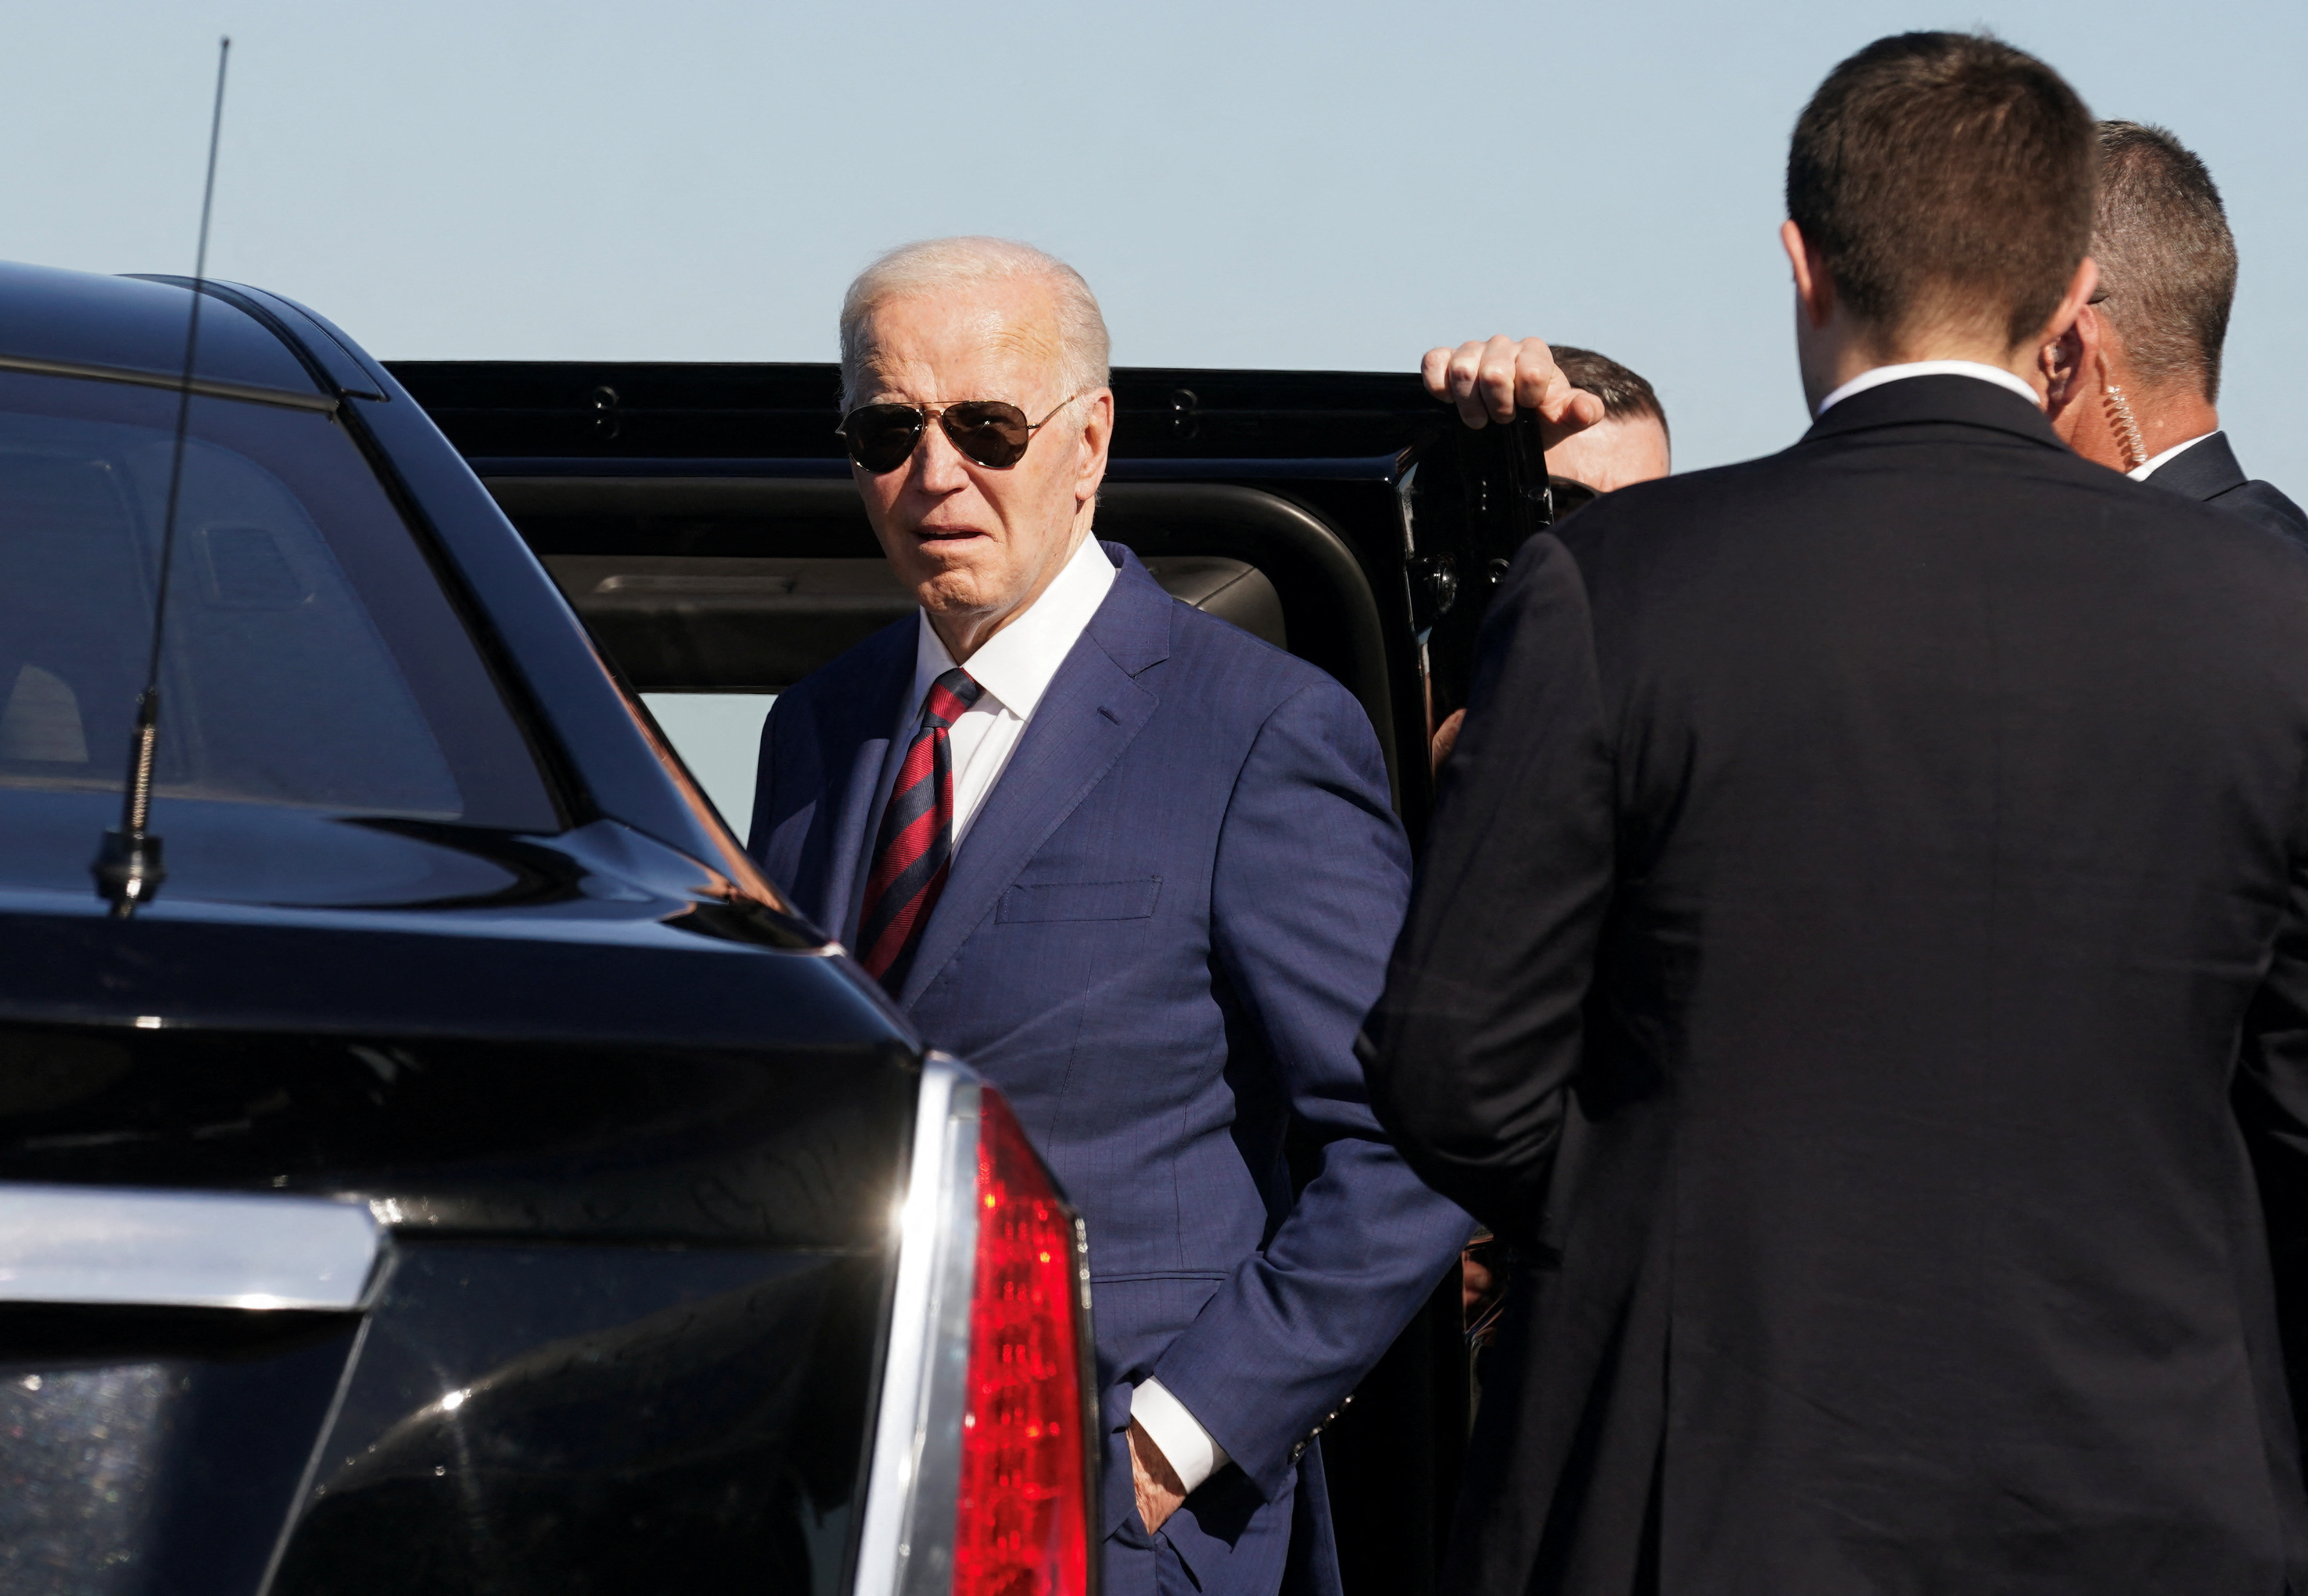 Biden arrives in Seattle